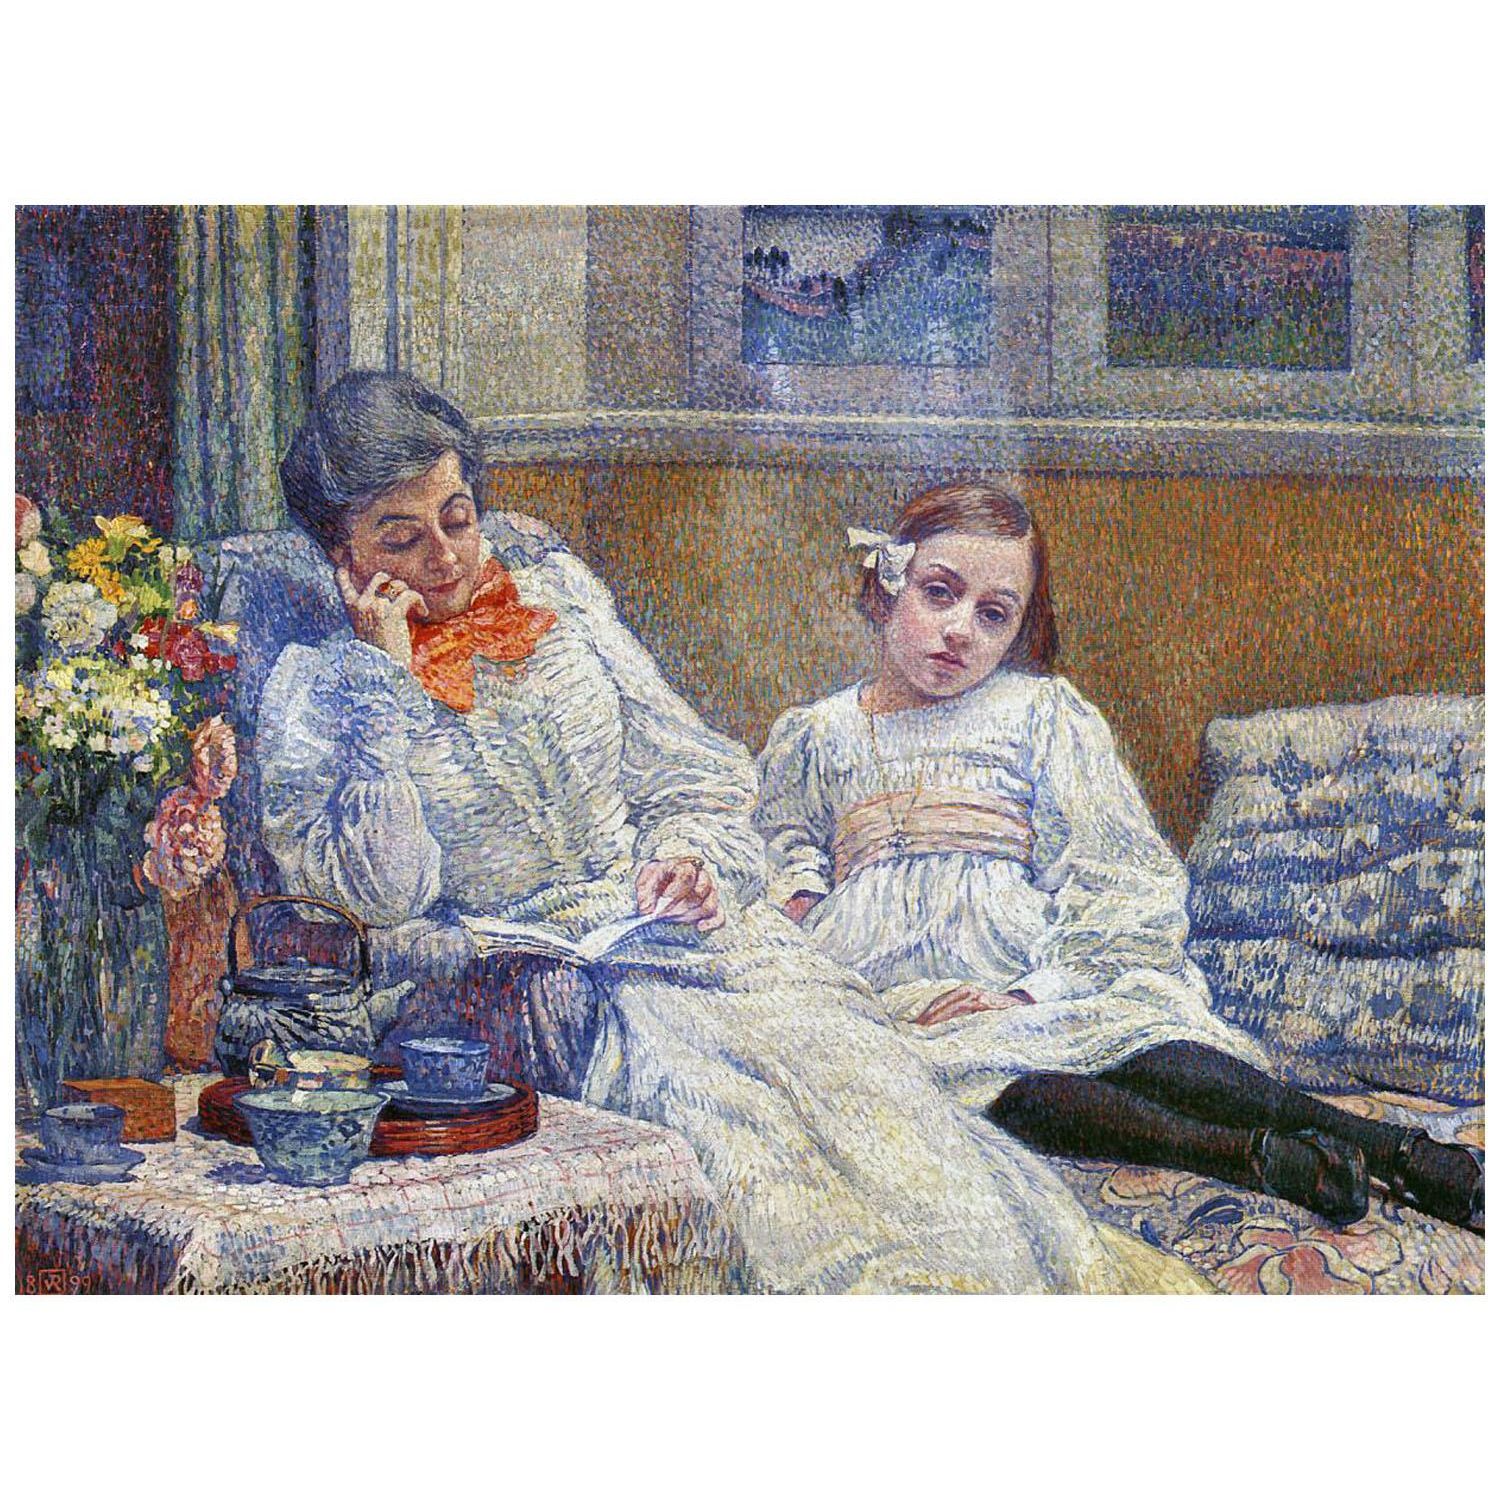 Theo van Rysselberghe. Maria et Elisabeth Rysselberghe. 1899. KMSKB Brussels